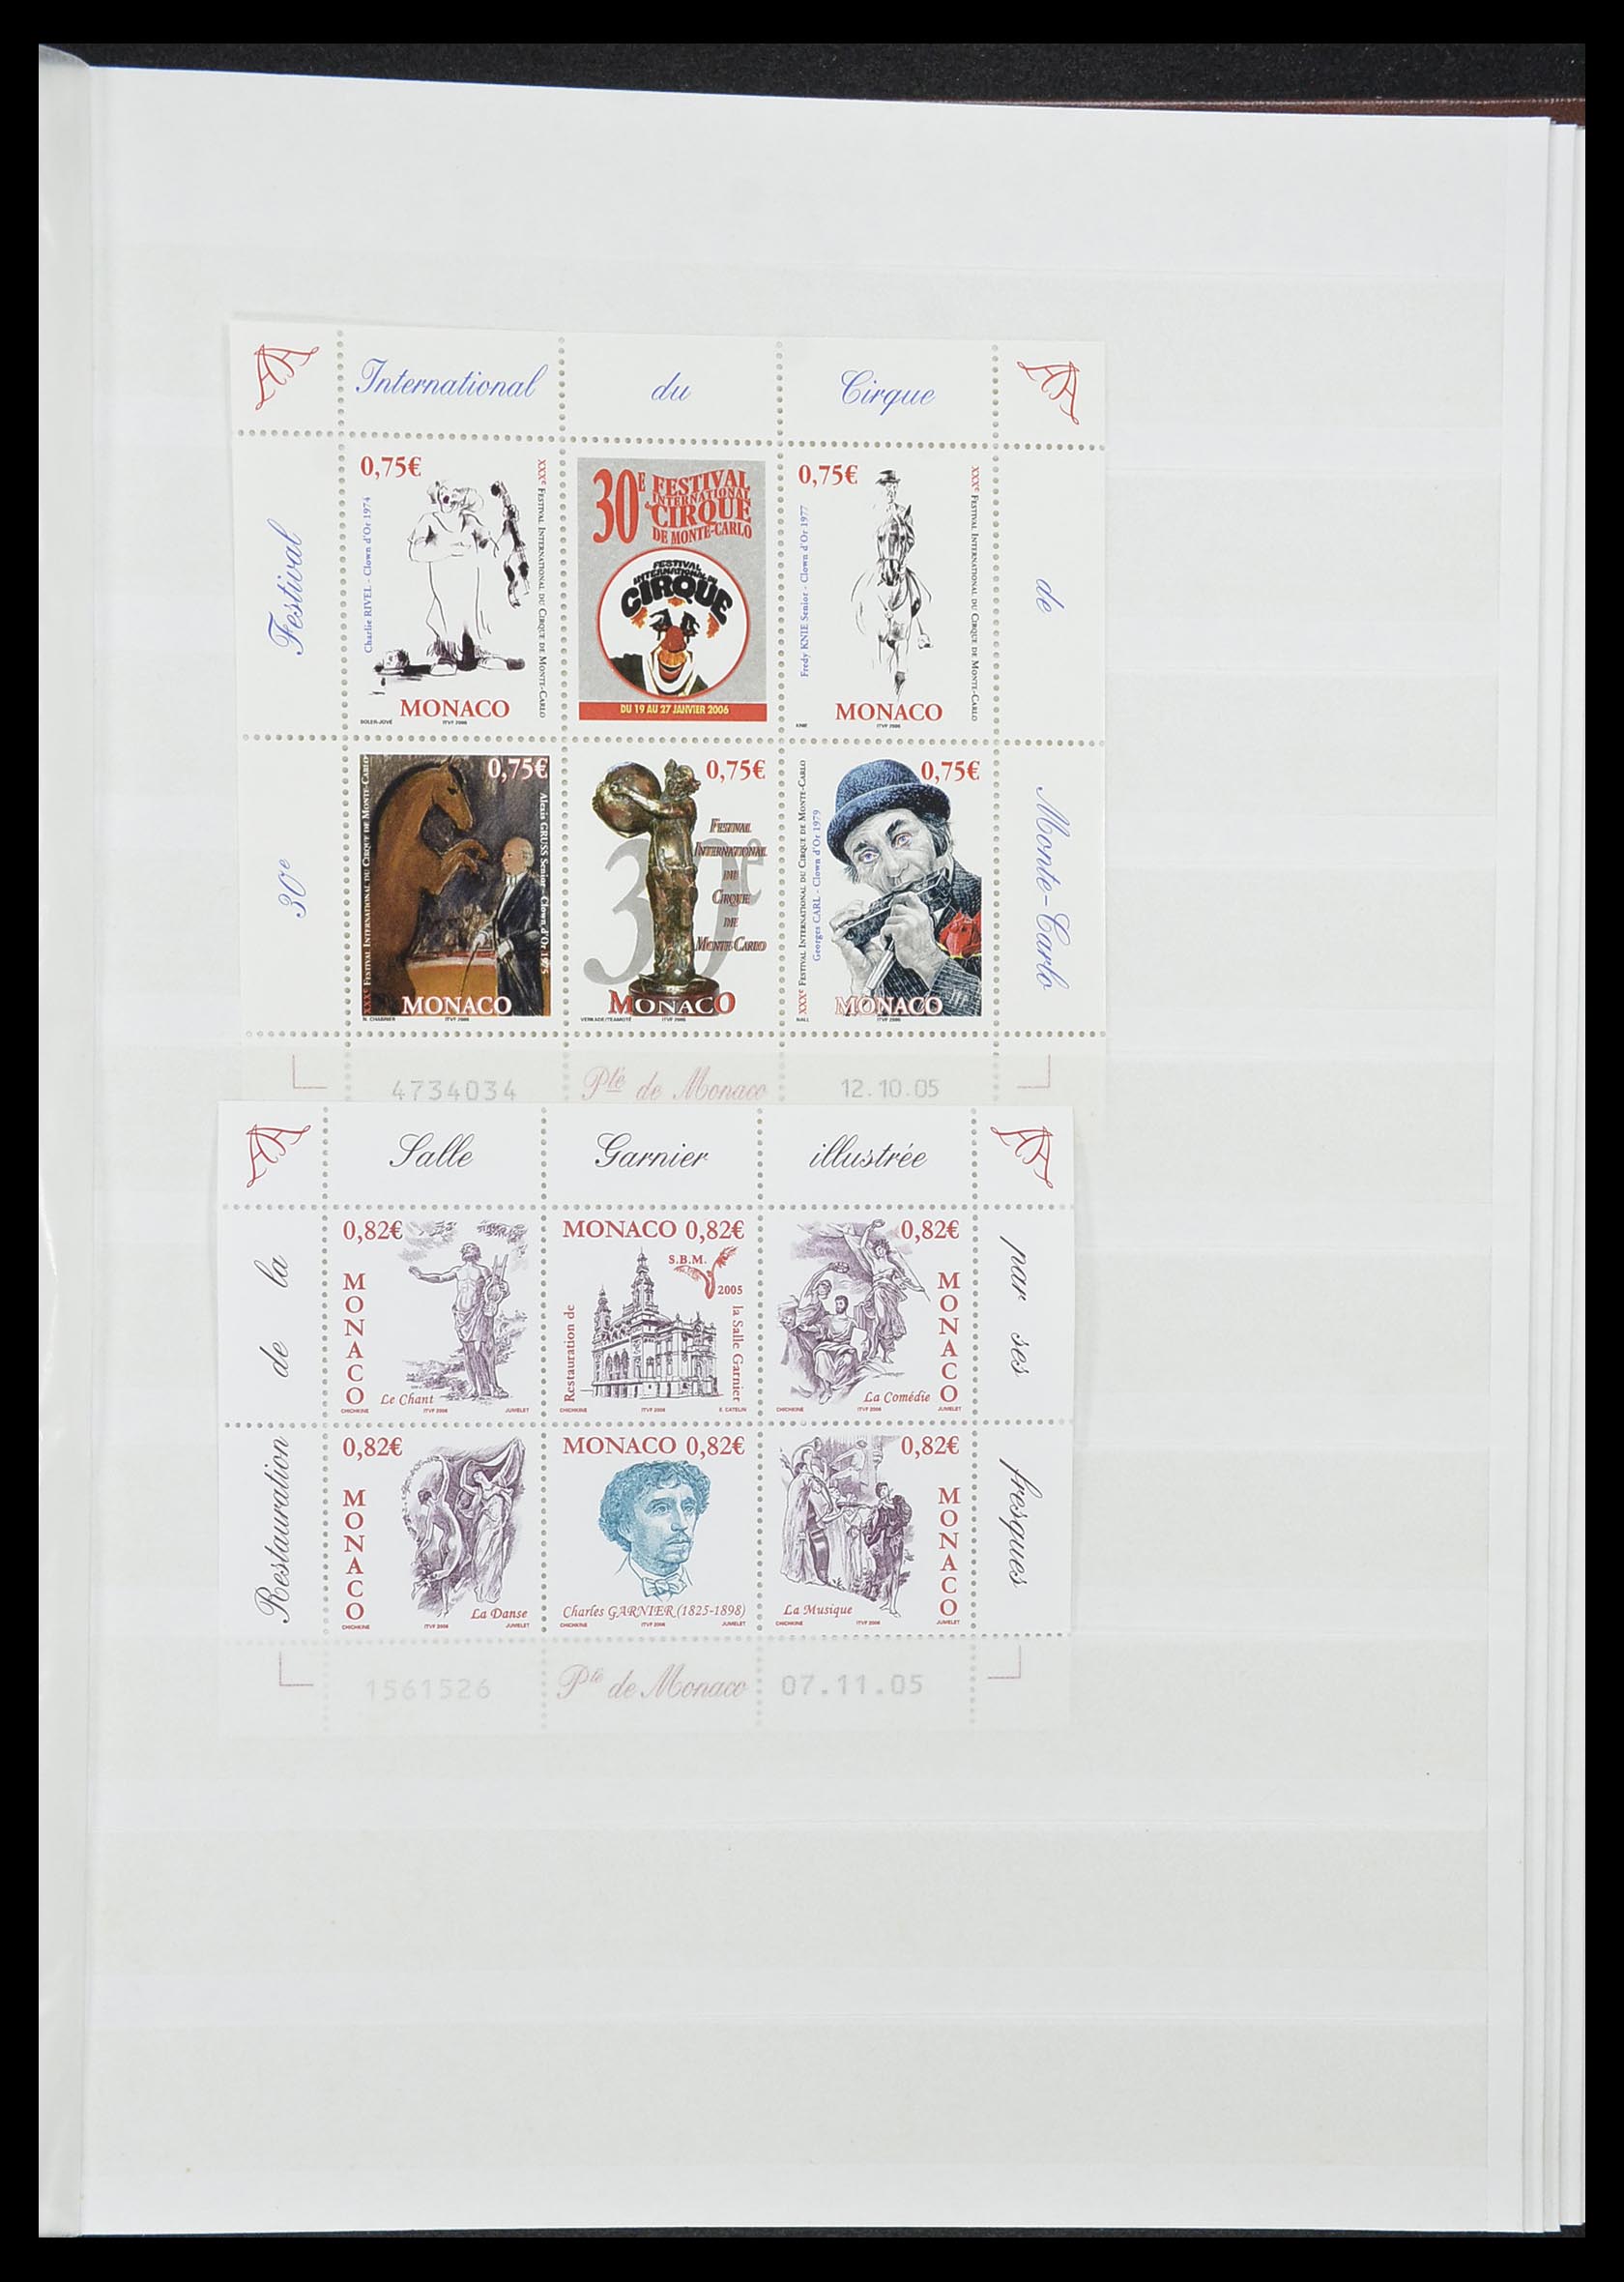 33833 037 - Stamp collection 33833 Monaco souvenir sheets 1979-2015.